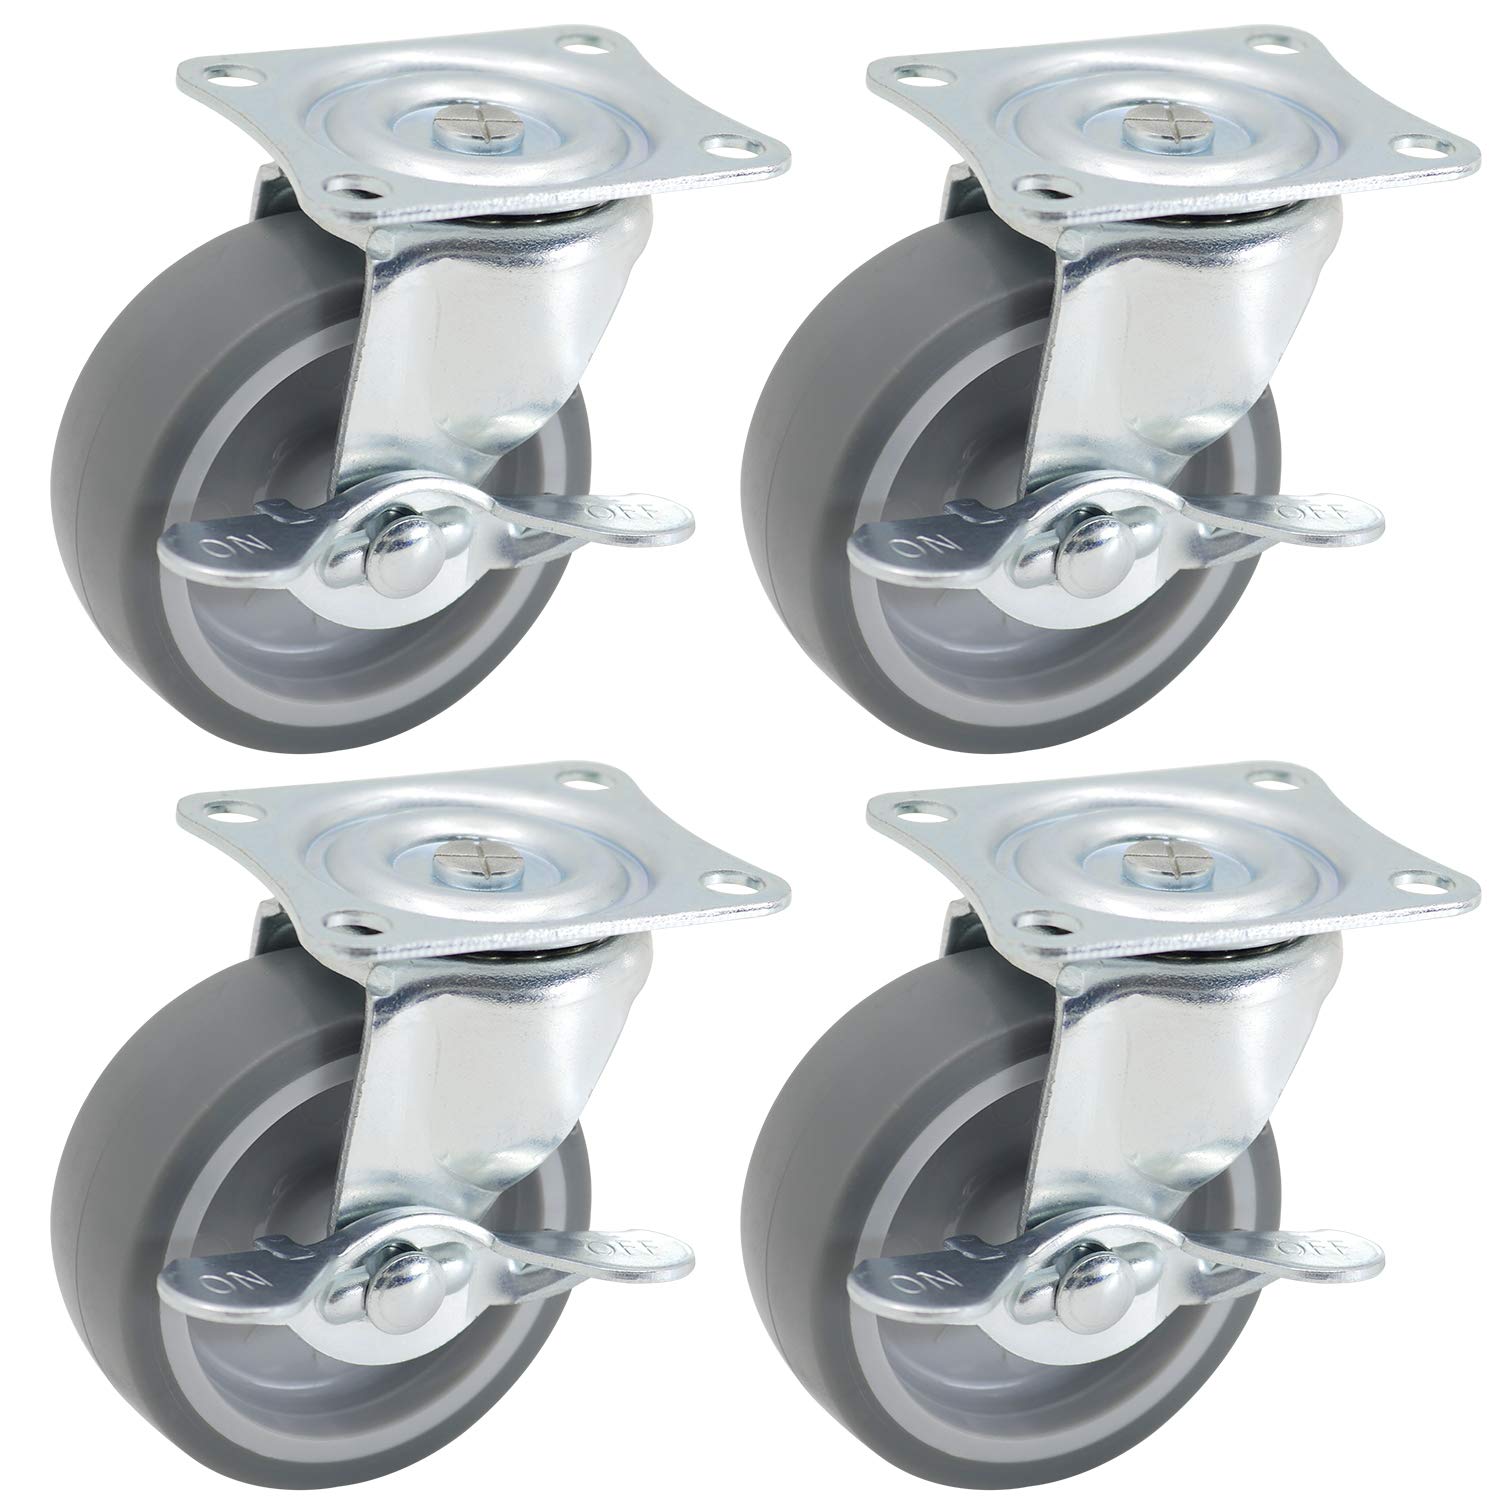 4-Ct of 3 Inch Swivel TRP Rubber Caster Wheels w/ Breaks $10.50 @ Amazon